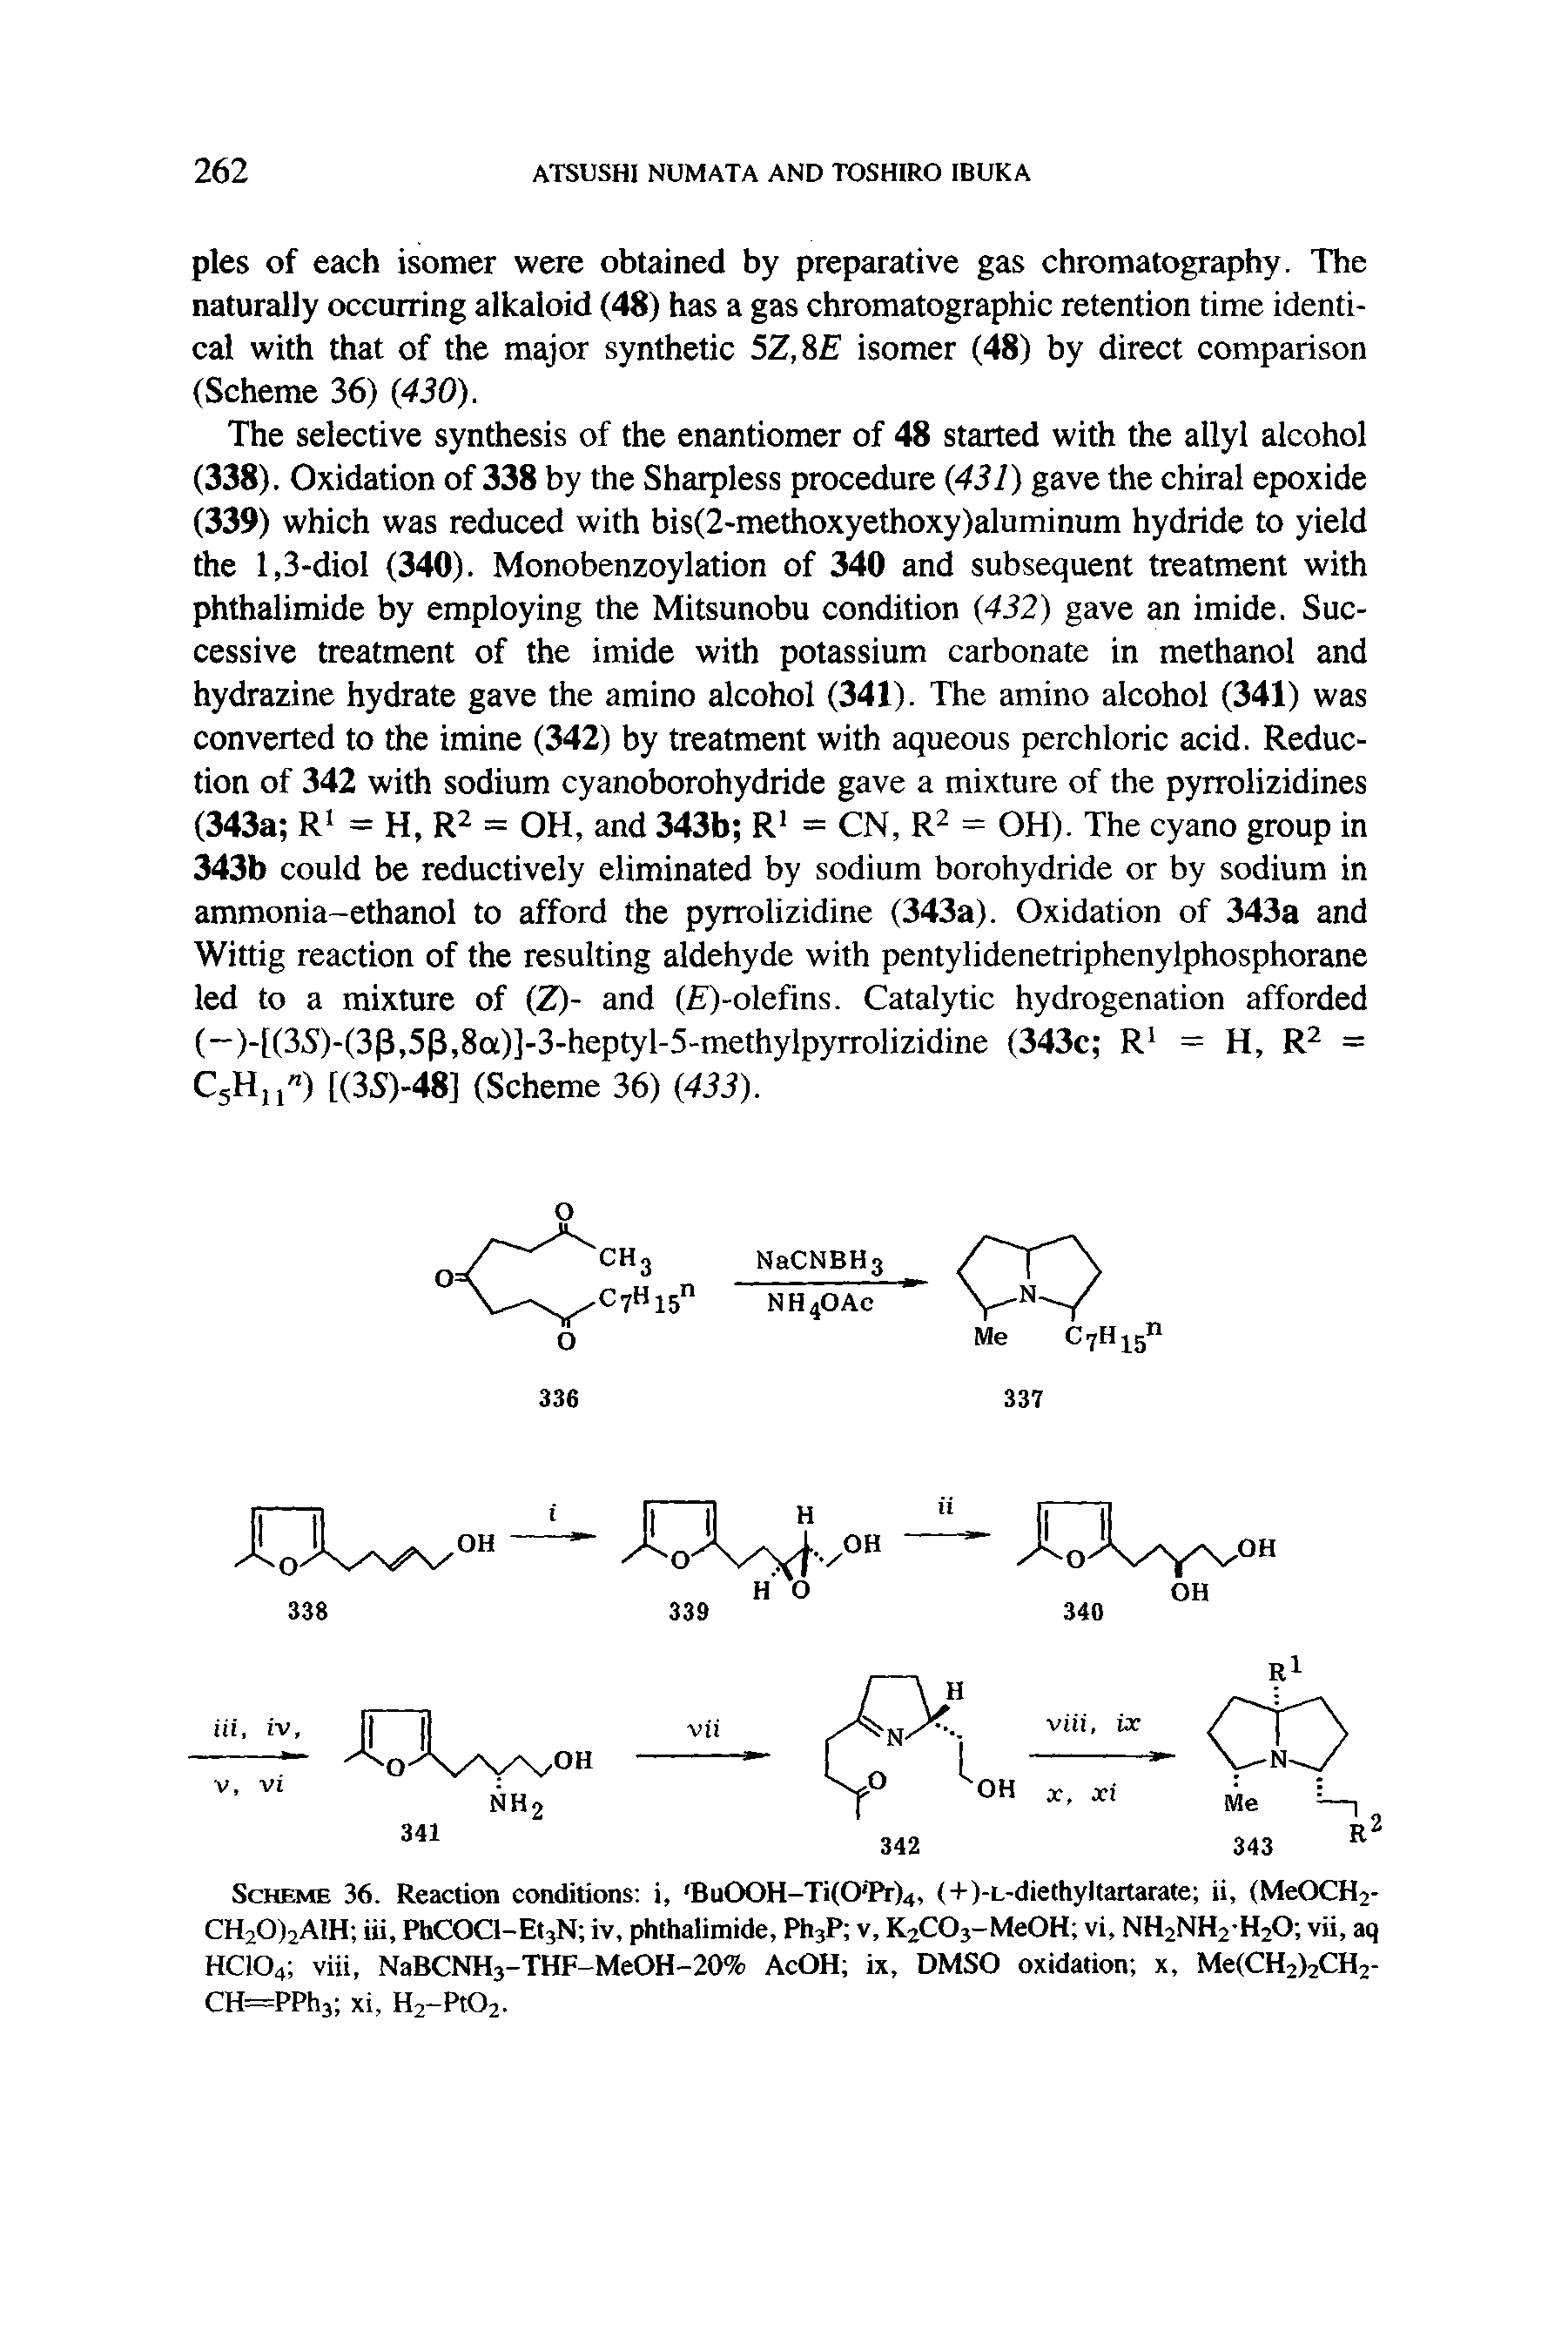 Scheme 36. Reaction conditions i, Bu00H-Ti(0 Pr)4, (+)-L-diethyltartarate ii, (MeOCH2-CH20)2A H iii, PhCOCl-EtjN iv, phthalimide, PhjP v, KjCOj-MeOH vi, NH2NH2H2O vii, aq HCIO4 viii, NaBCNH3-THF-MeOH-20% AcOH ix, DMSO oxidation x, Me(CH2>2CH2-CH=PPh3i xi, H2-Pt02.